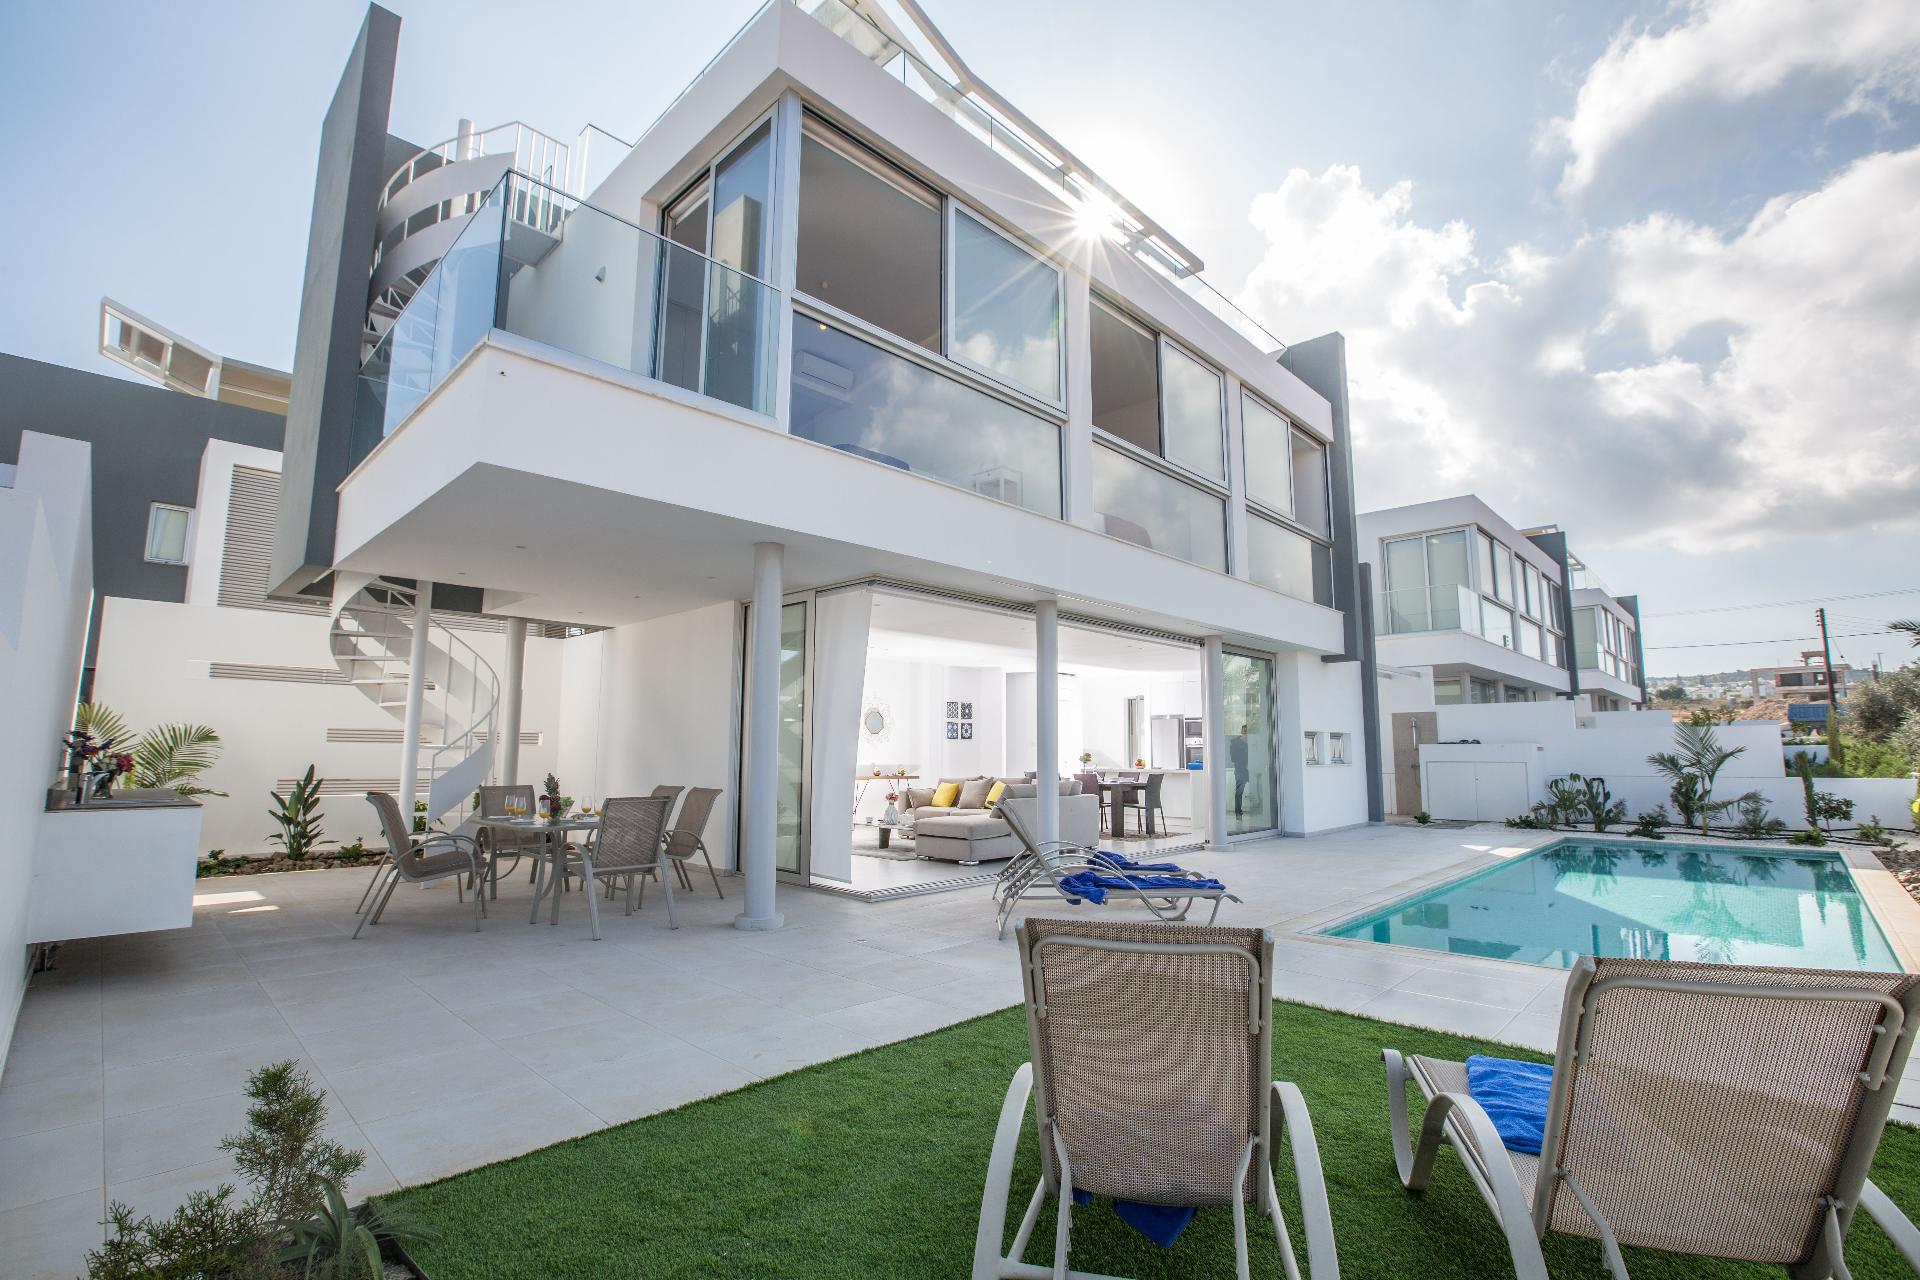 Ferienhaus mit Privatpool für 7 Personen ca.  Ferienhaus in Zypern